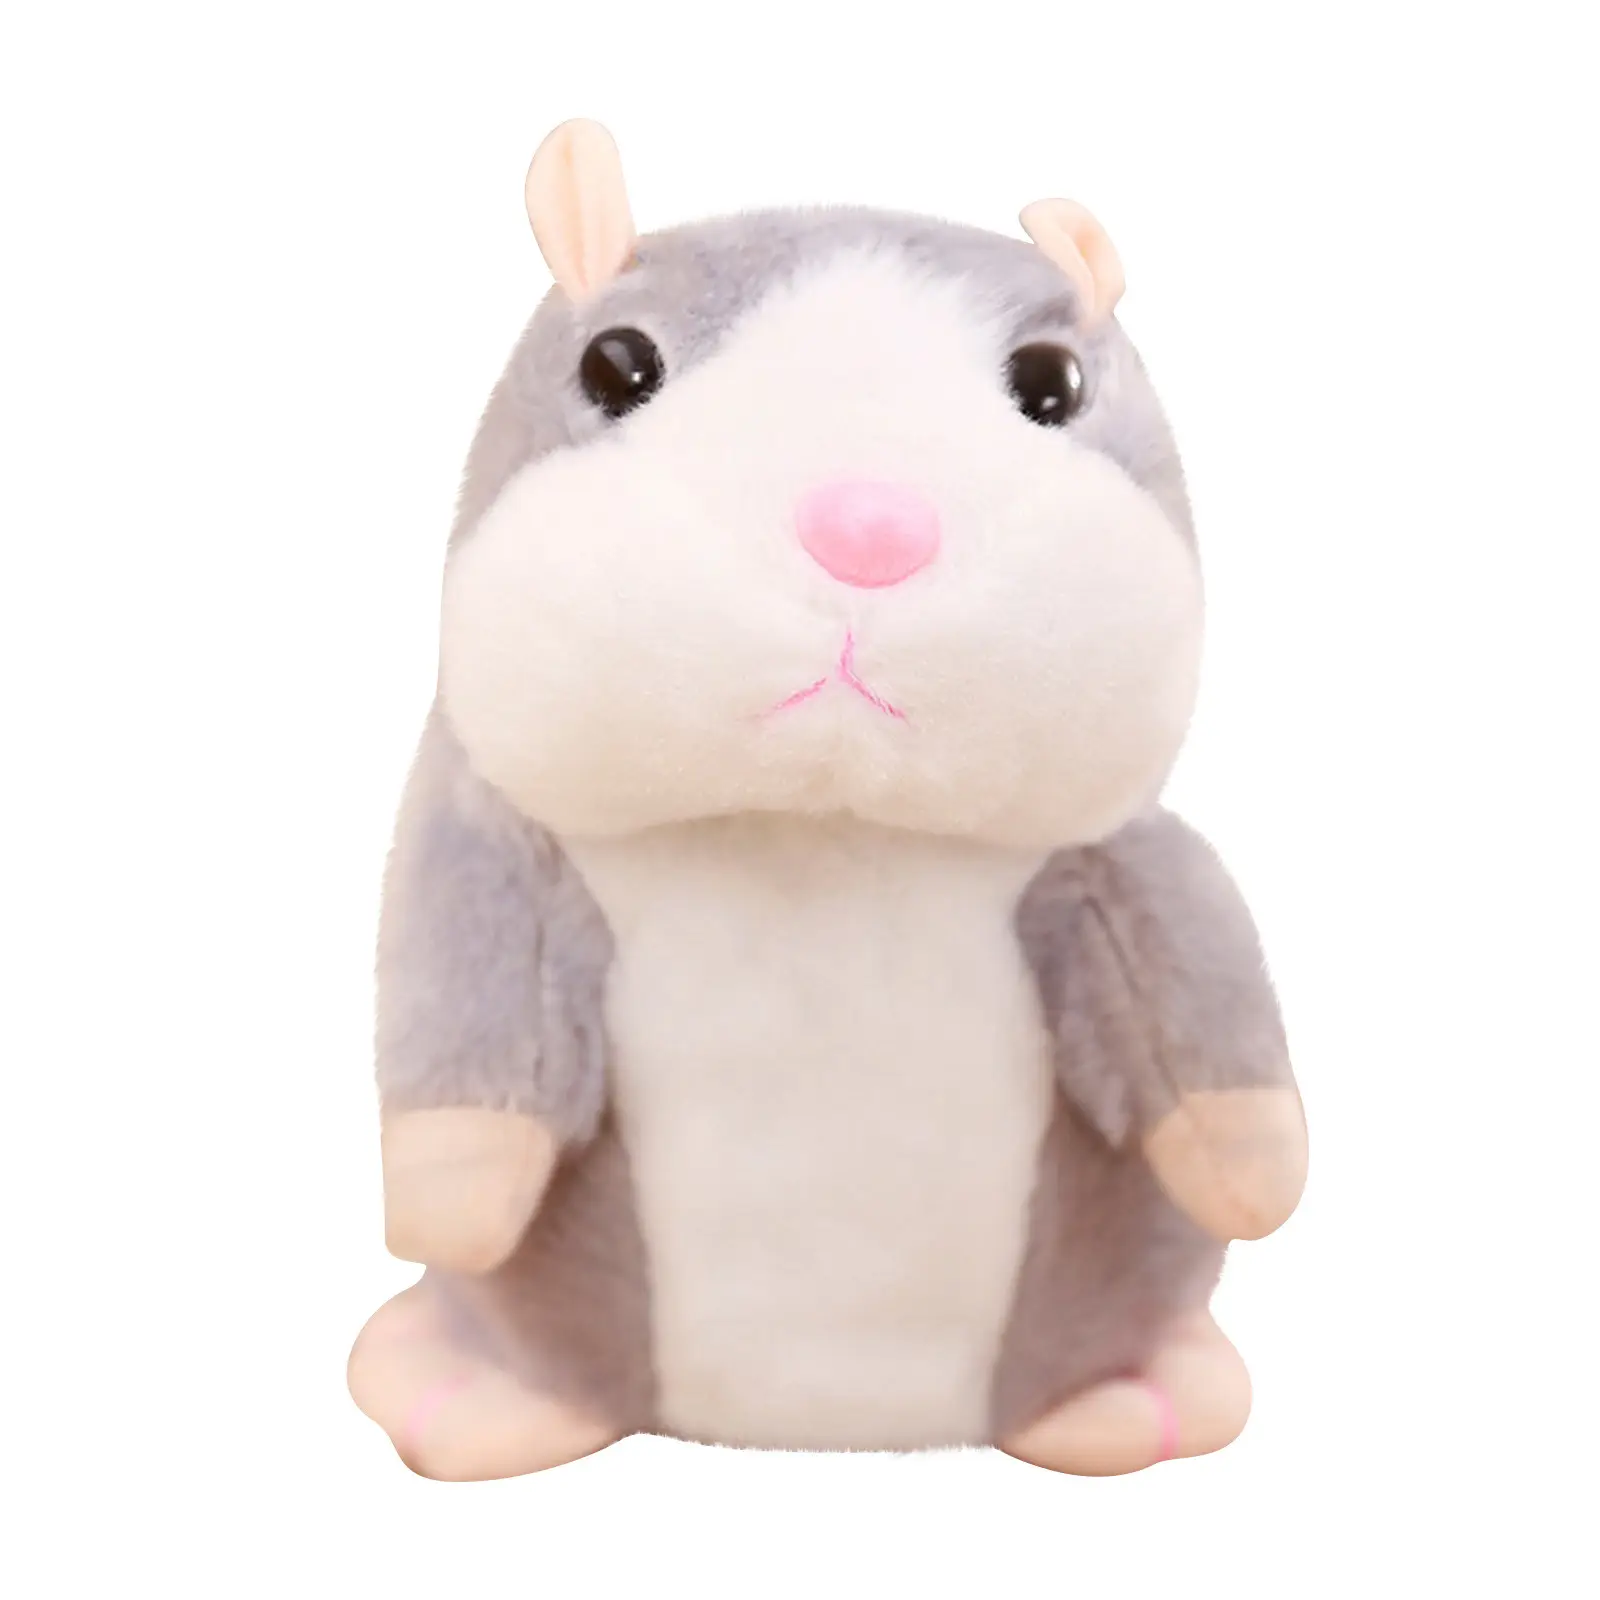 Peluche de ratón de hámster parlante para niños, juguete educativo para niños de 15 cm